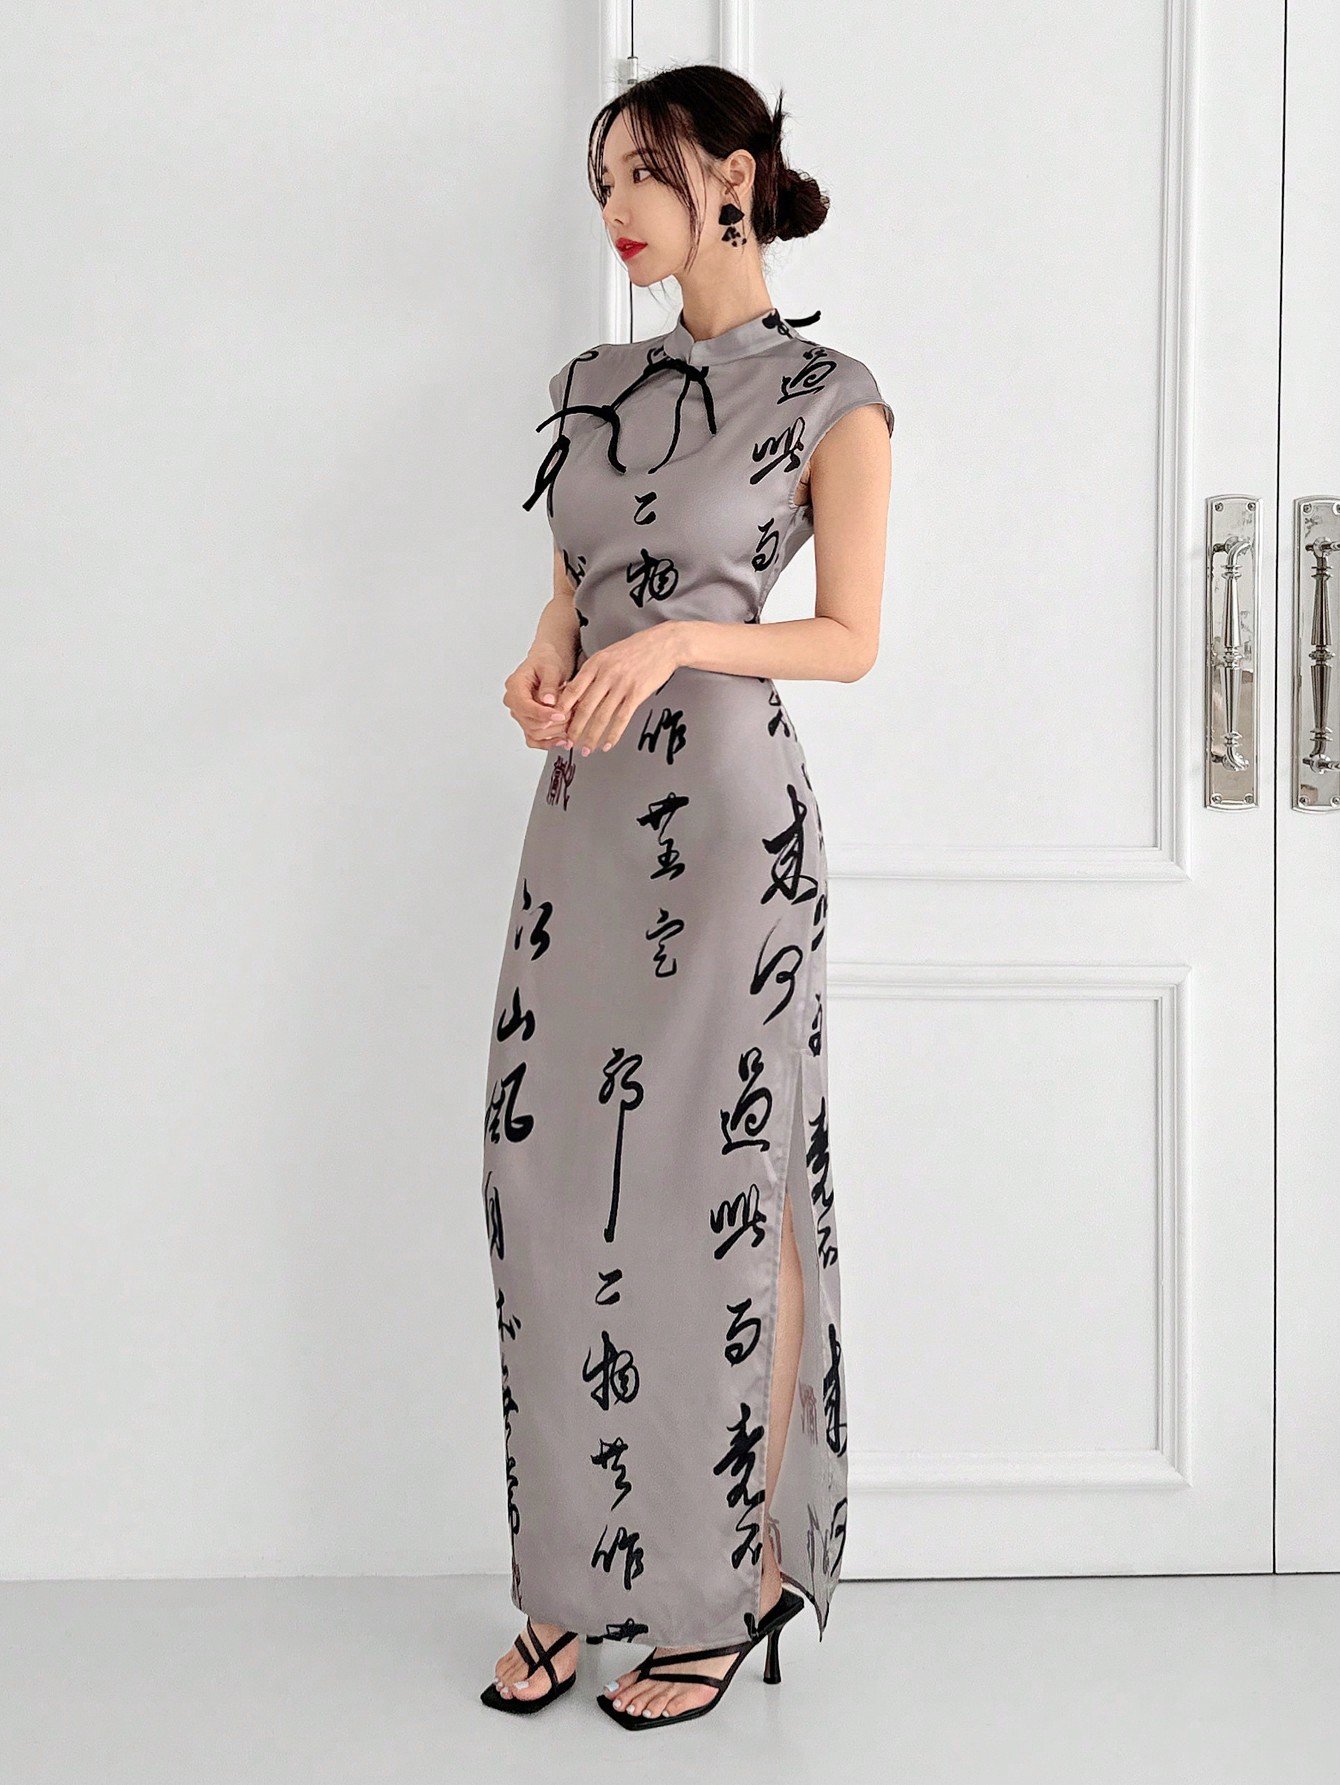 新しい中国風のカラーブロックチャイナドレス、サテンプリント素材でバックレスになったデザイン、バックルの装飾